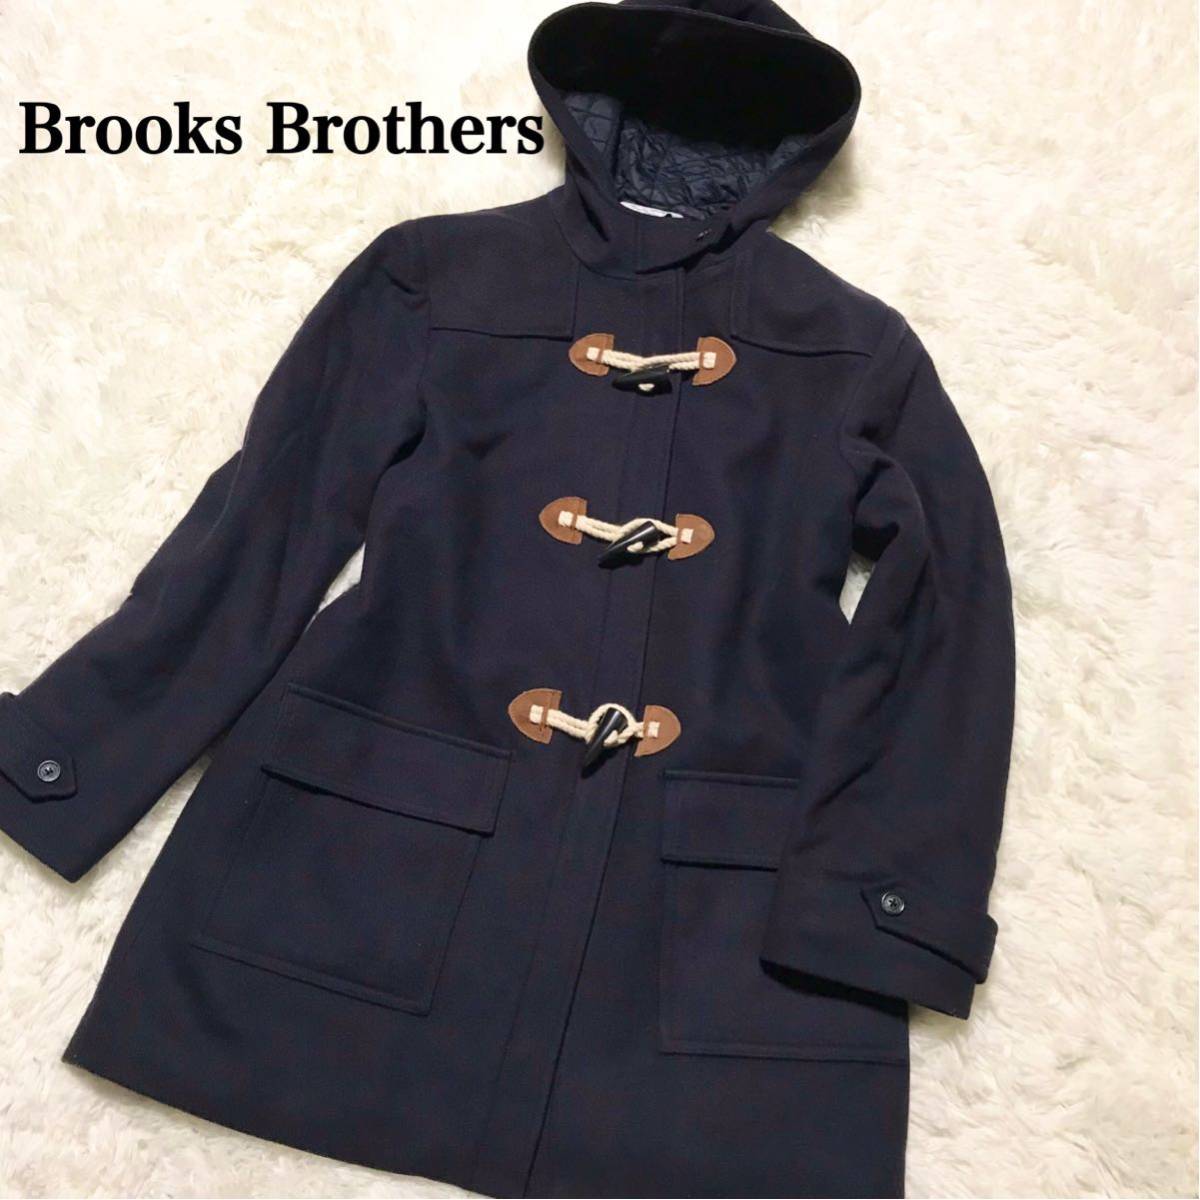 見事な Brooks Brothers 高級キャメルヘアー100% ウールダッフルコート 